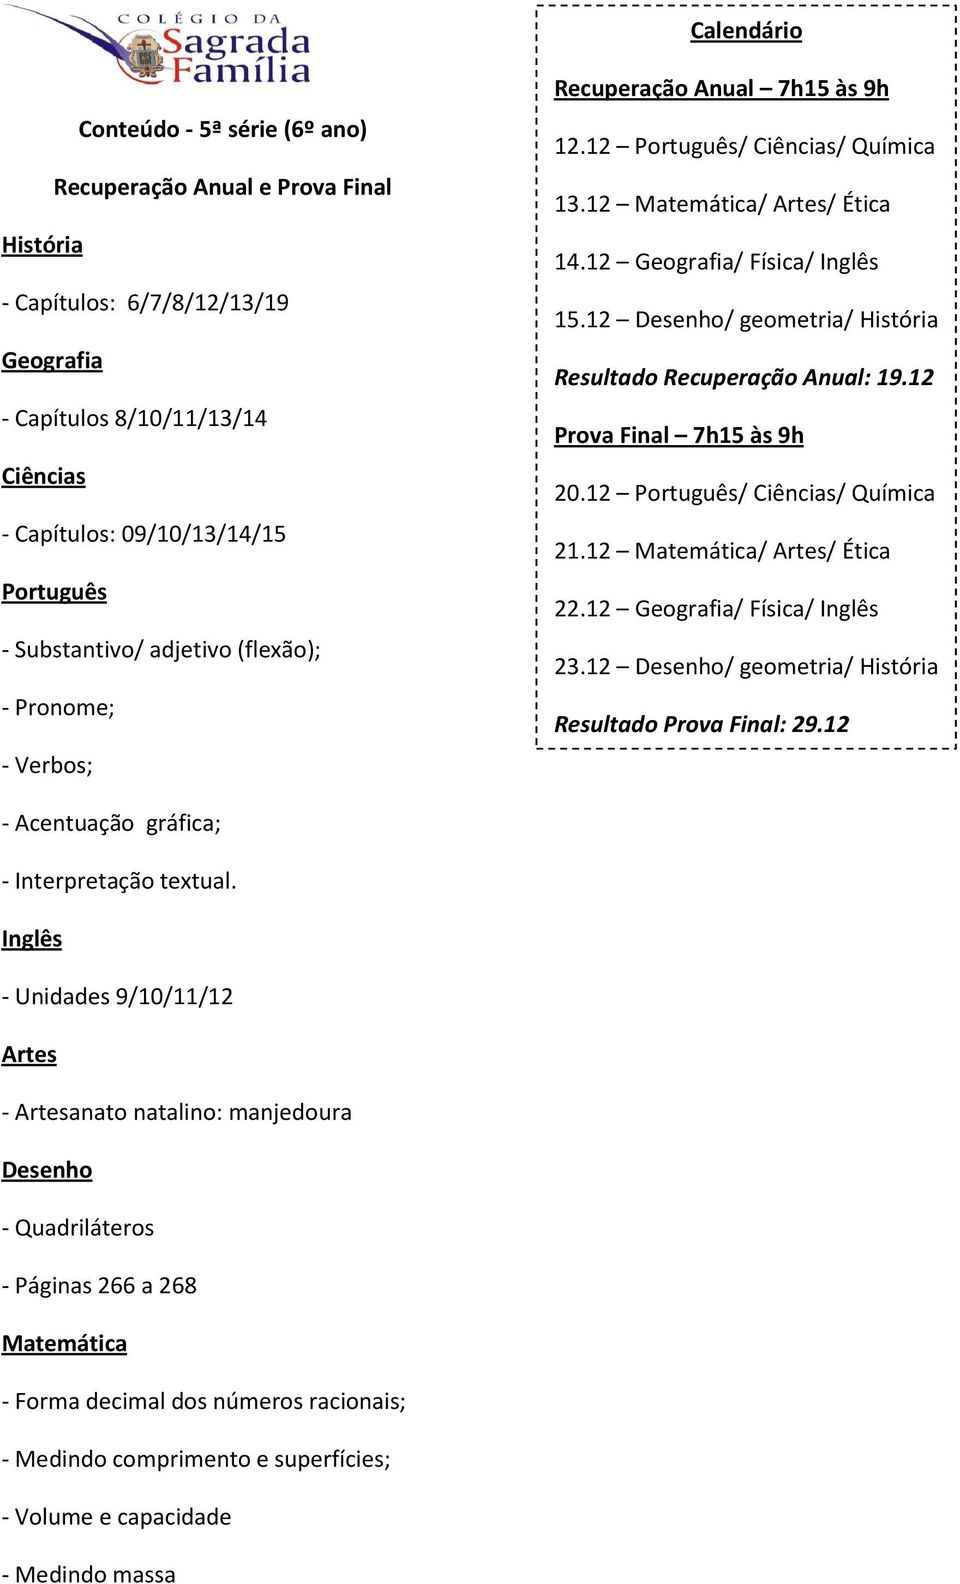 Unidades 9/10/11/12 - anato natalino: manjedoura - Quadriláteros - Páginas 266 a 268 - Forma